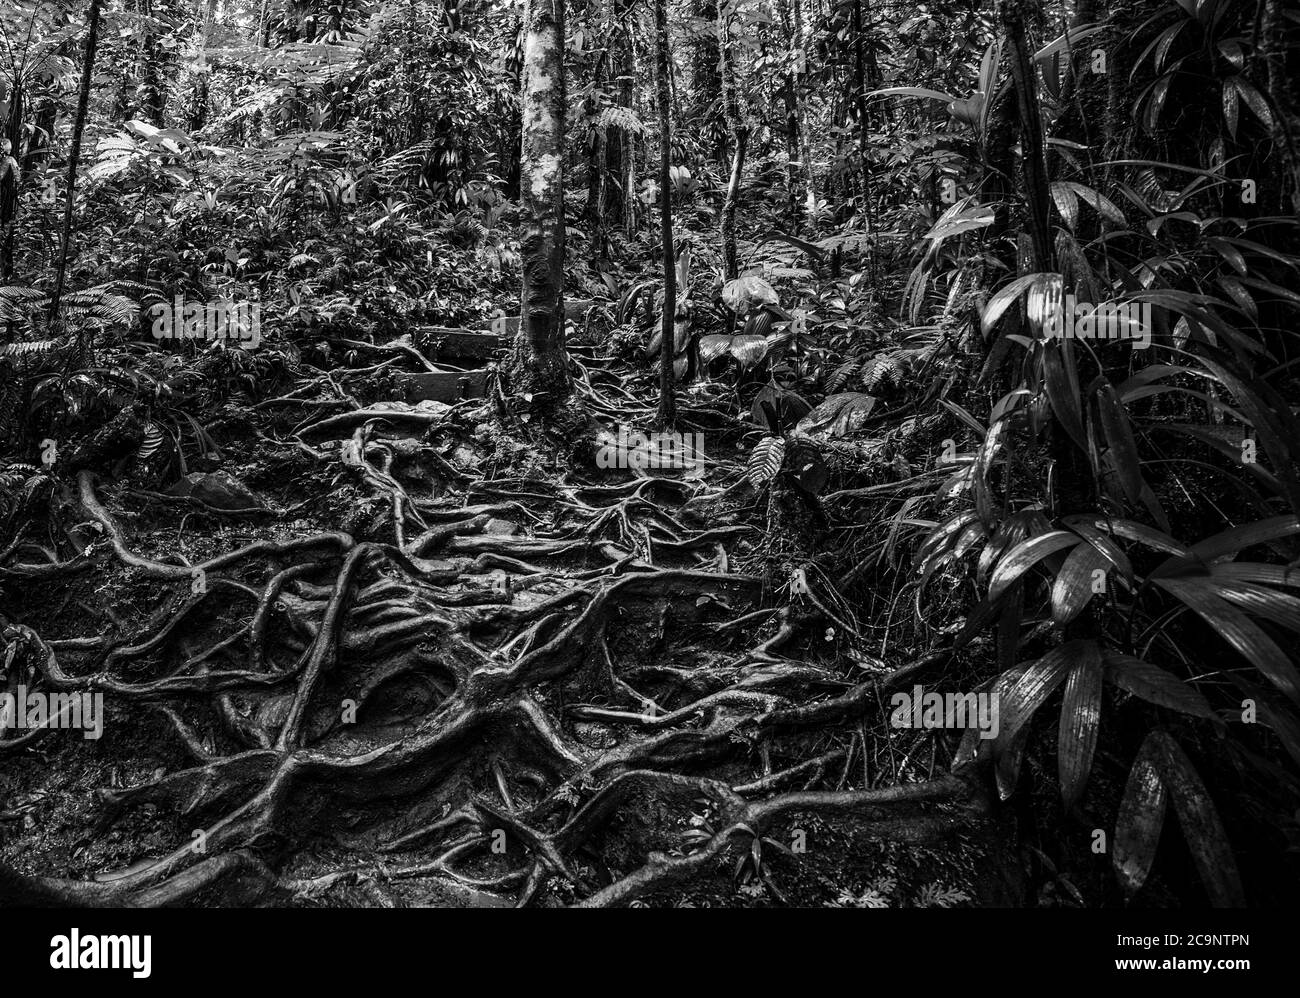 Racines et plantes vertes dans la jungle de Basse Terre, Guadeloupe. Antilles néerlandaises, Caraïbes. Effet noir et blanc Banque D'Images